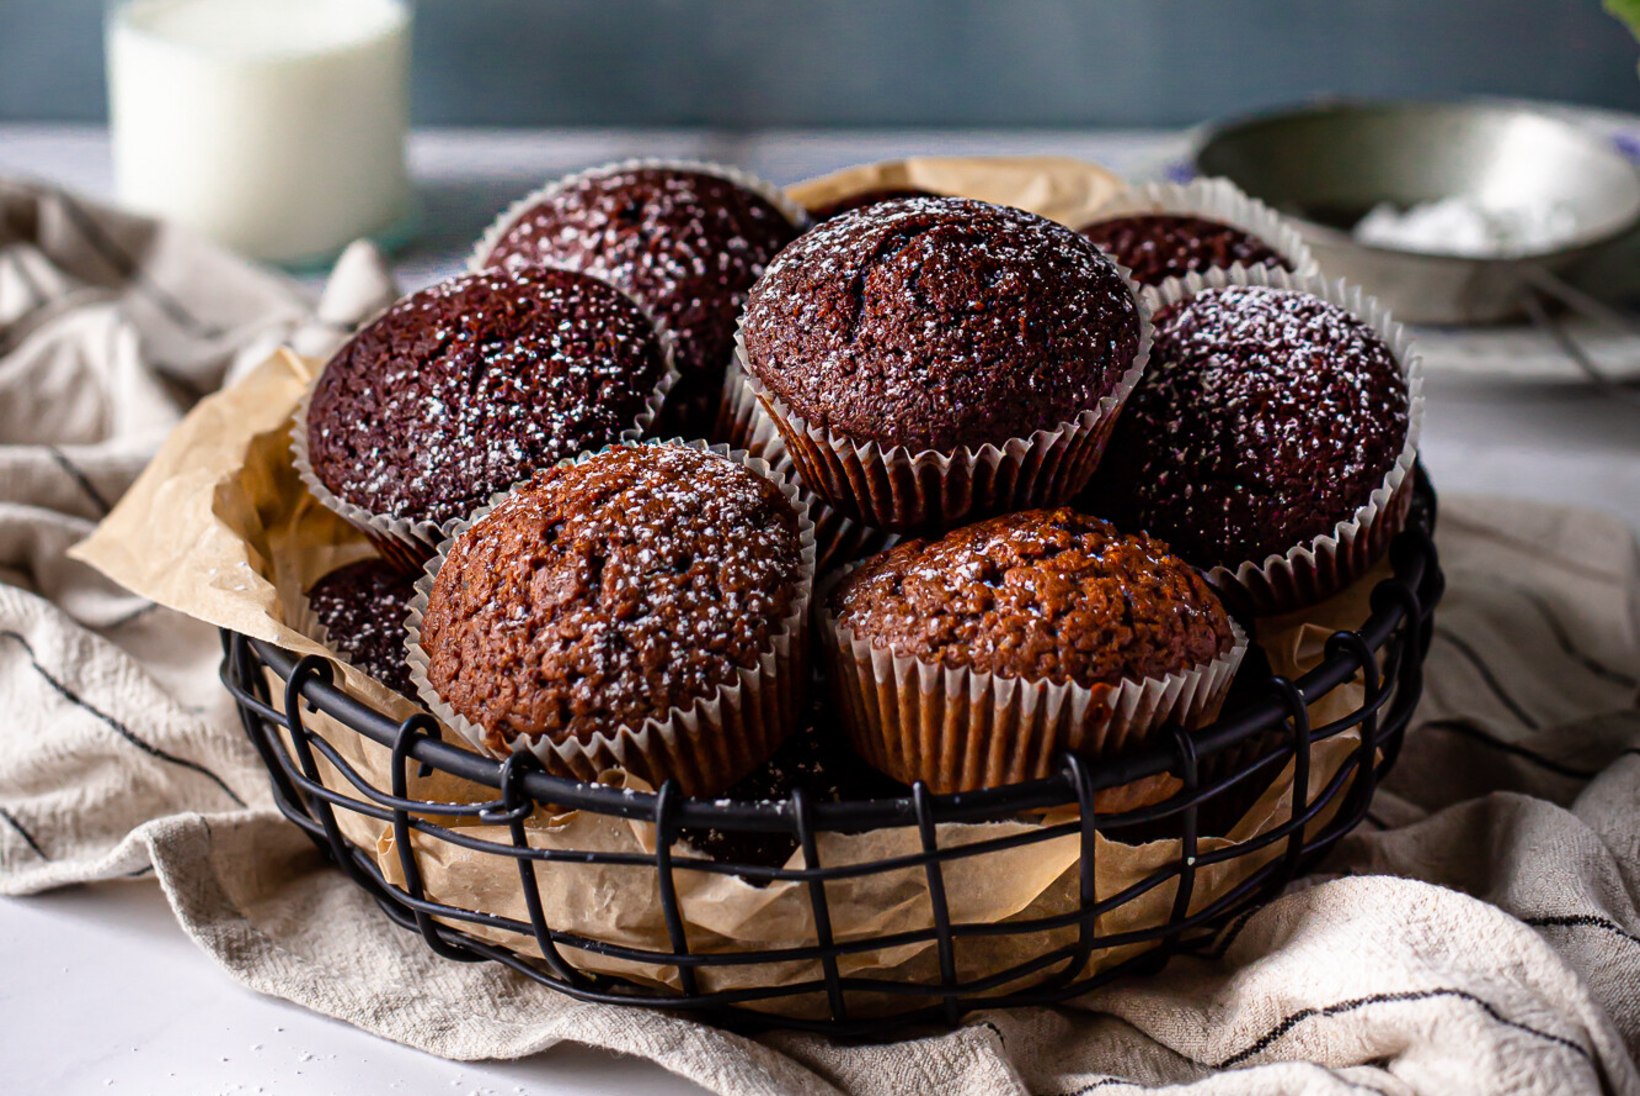 KÜPSETAME JA TESTIME! Millisest pulbrist valmib parim šokolaadimuffin?